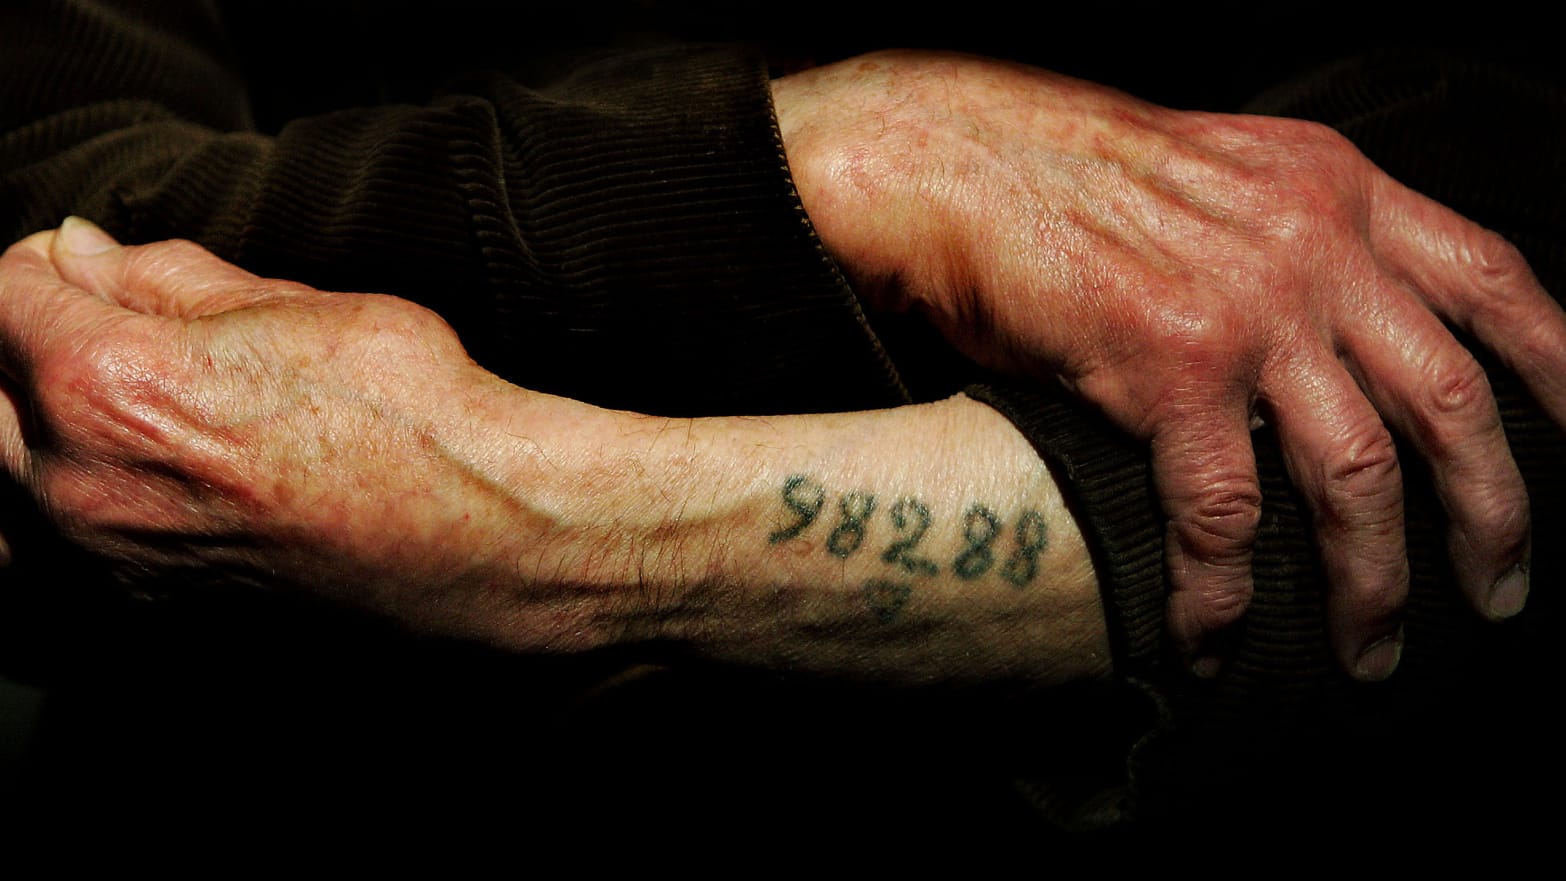 Auschwitz survivor Mr. Leon Greenman, prison number 98288, displays his number tattoo.